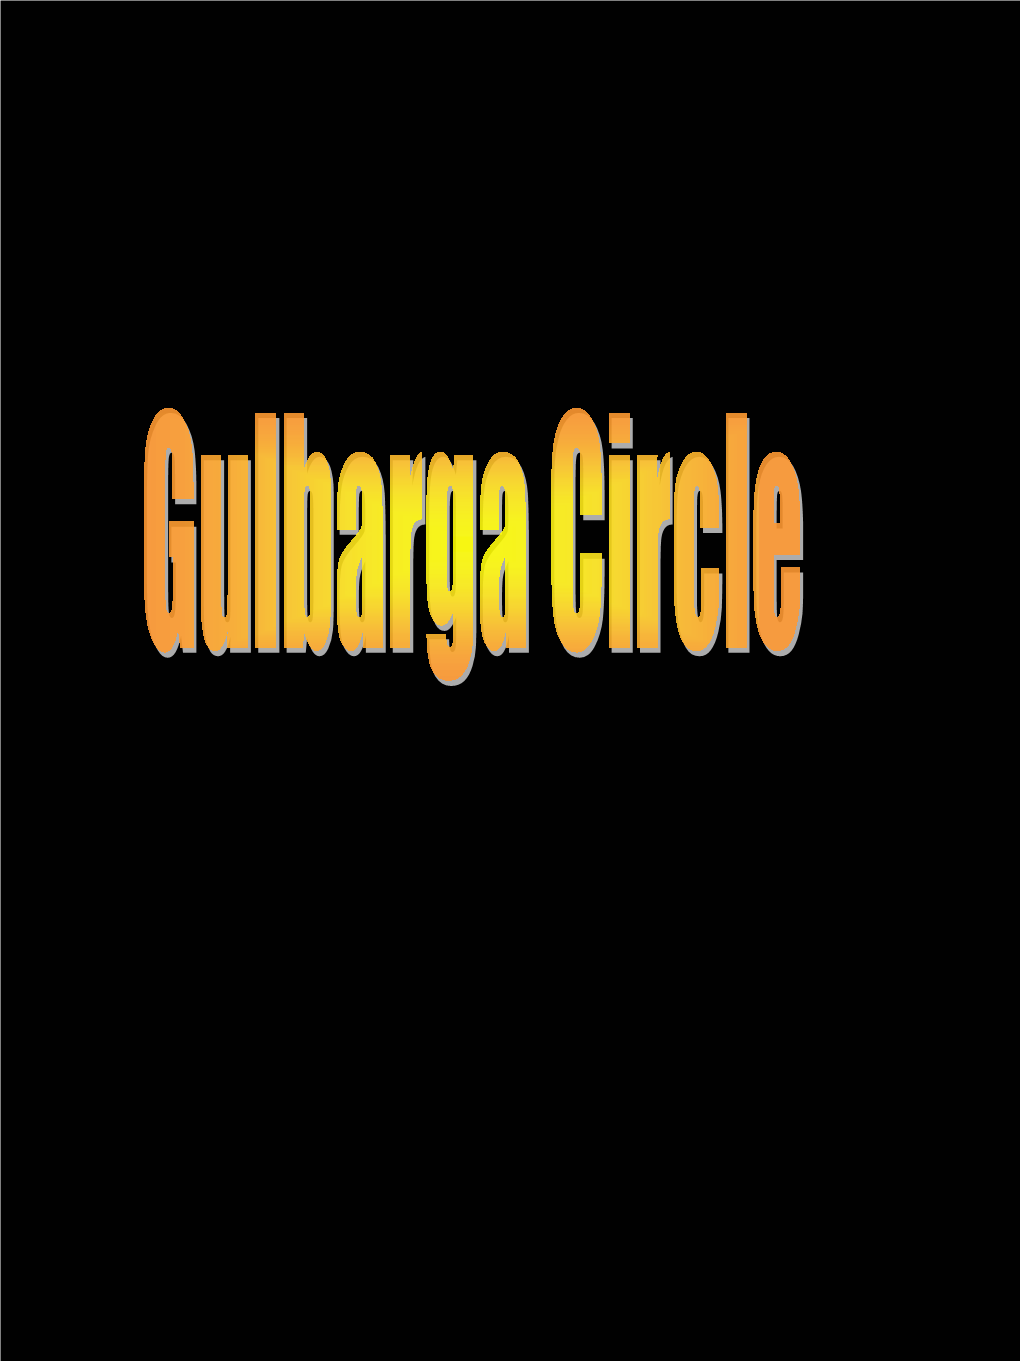 Genesis of Gulbarga Circle